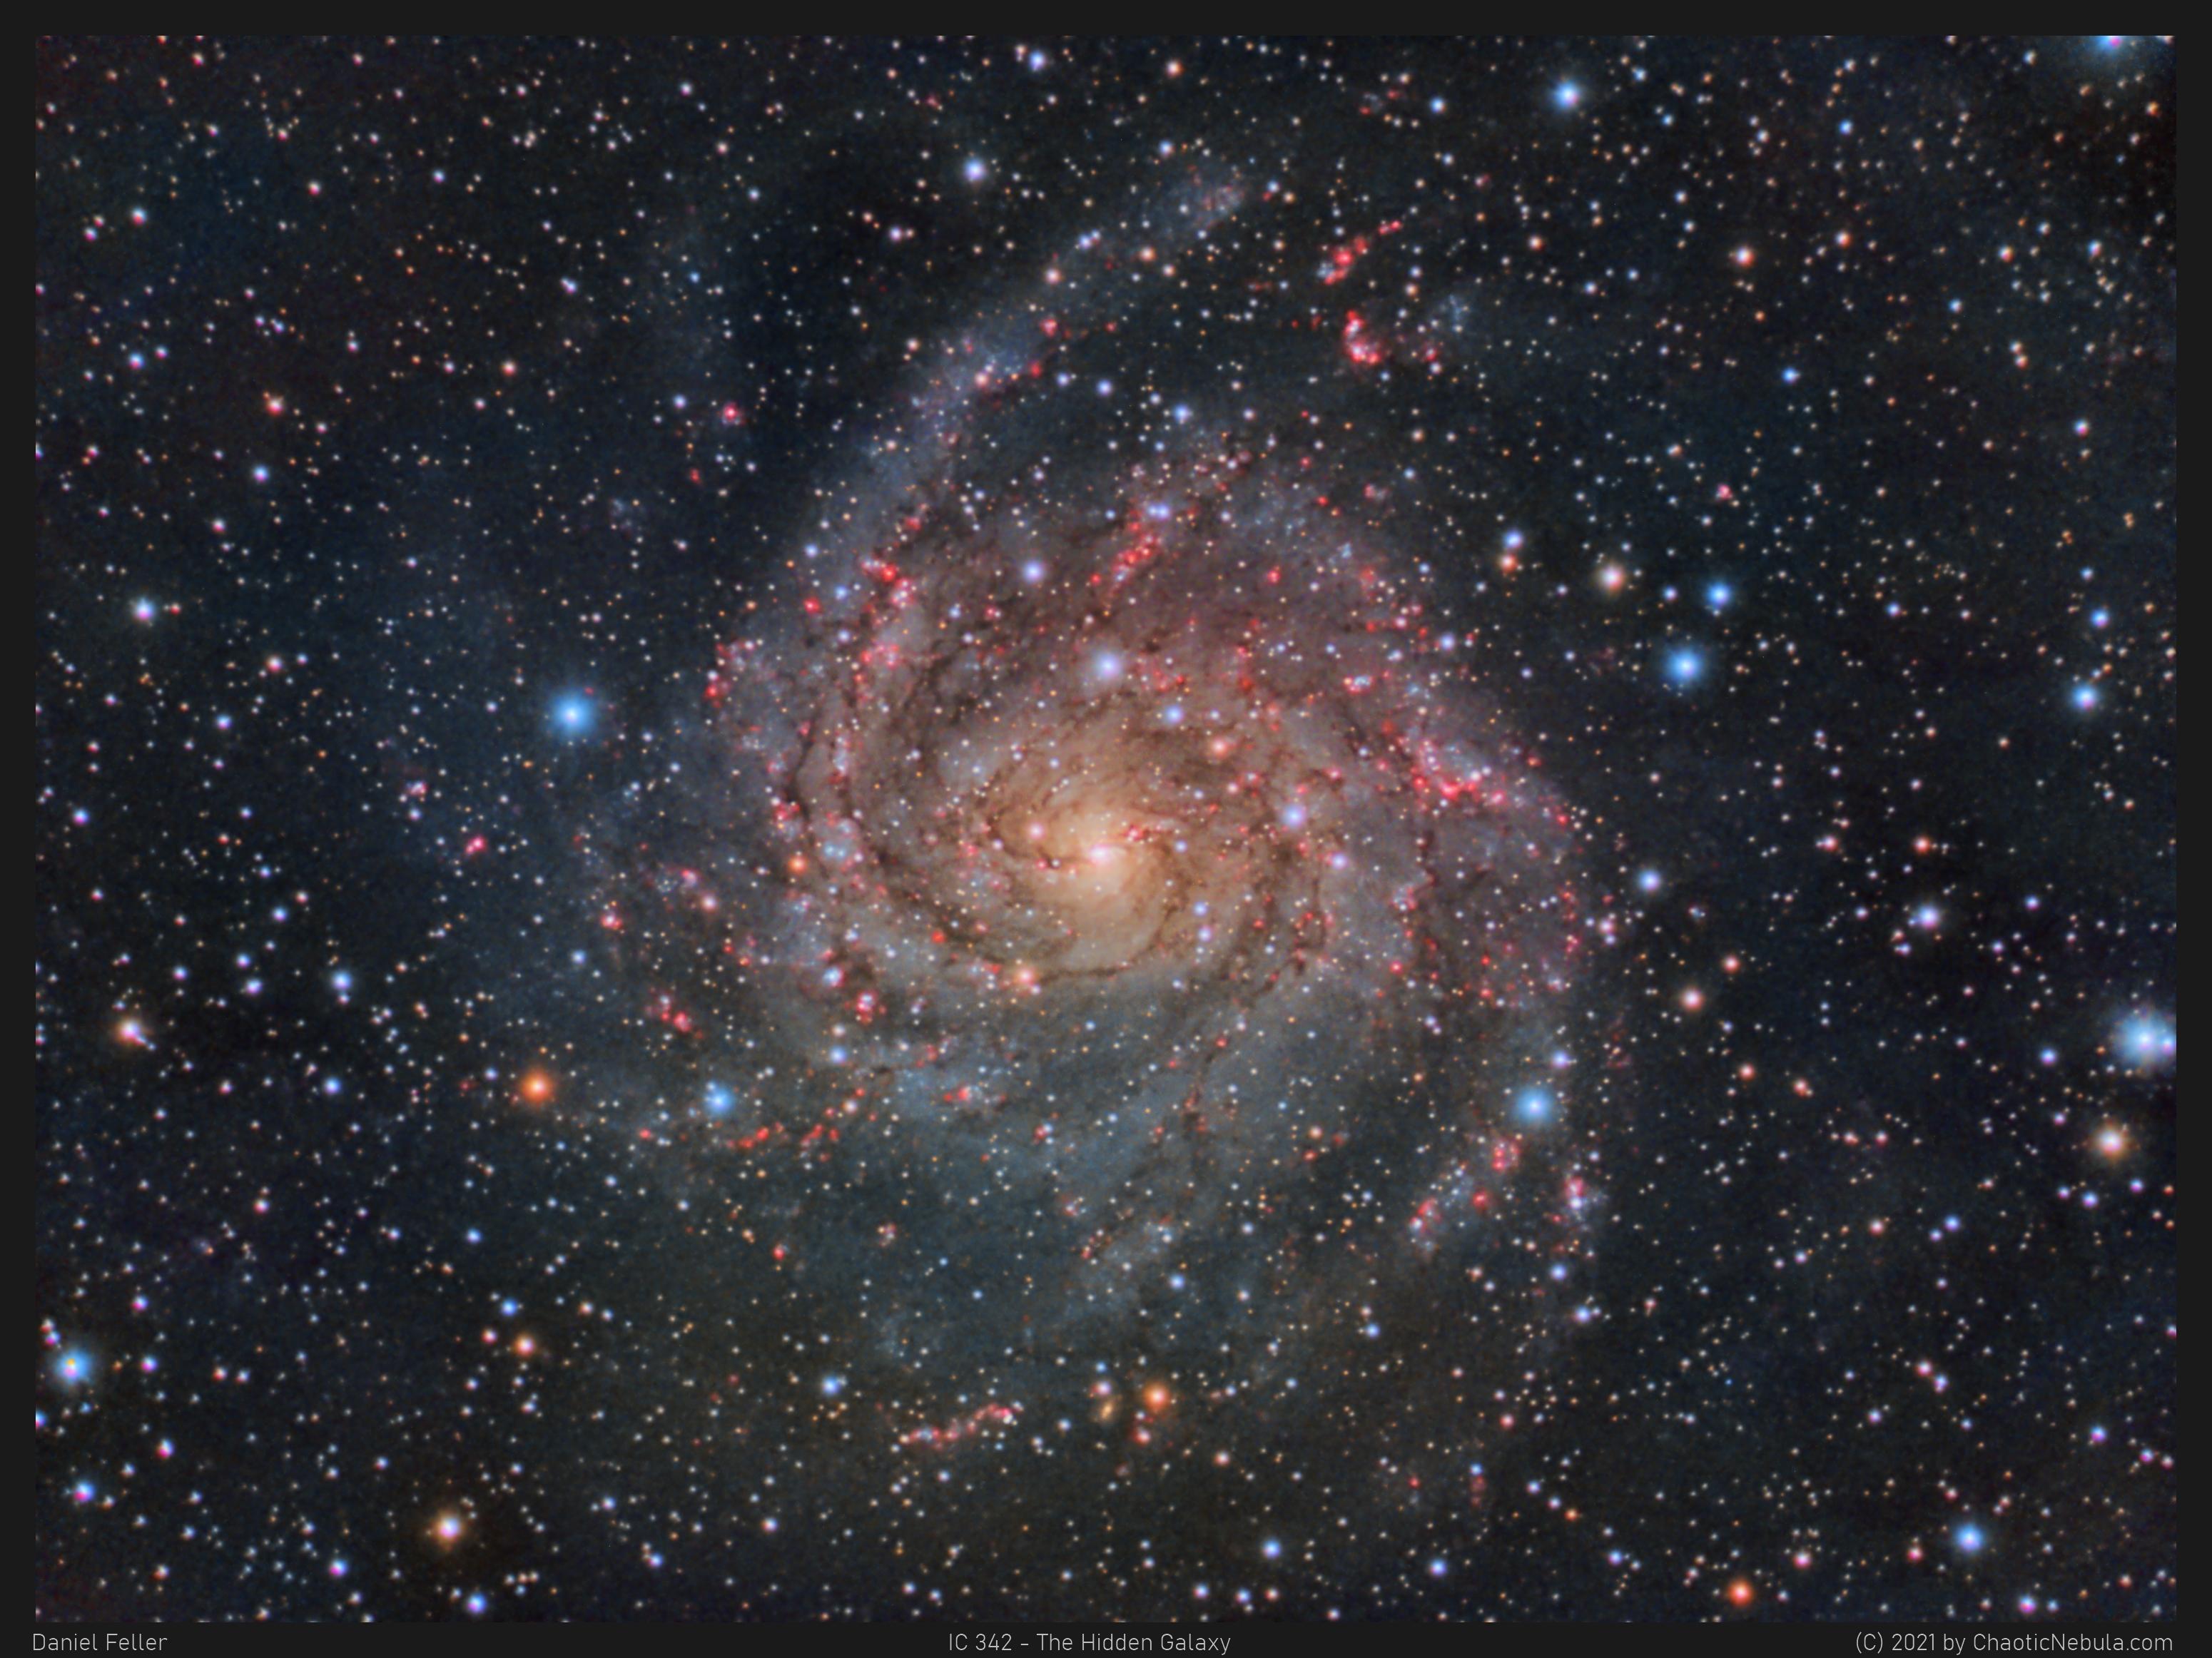 مجرّة حلزونيّة نراها من وجهها تظهر أذرعها الملتفّة المترامية وفيها مناطق التشكّل النجمي الورديّة. تظهر كذلك نجوم المقدّمة على امتداد الصورة